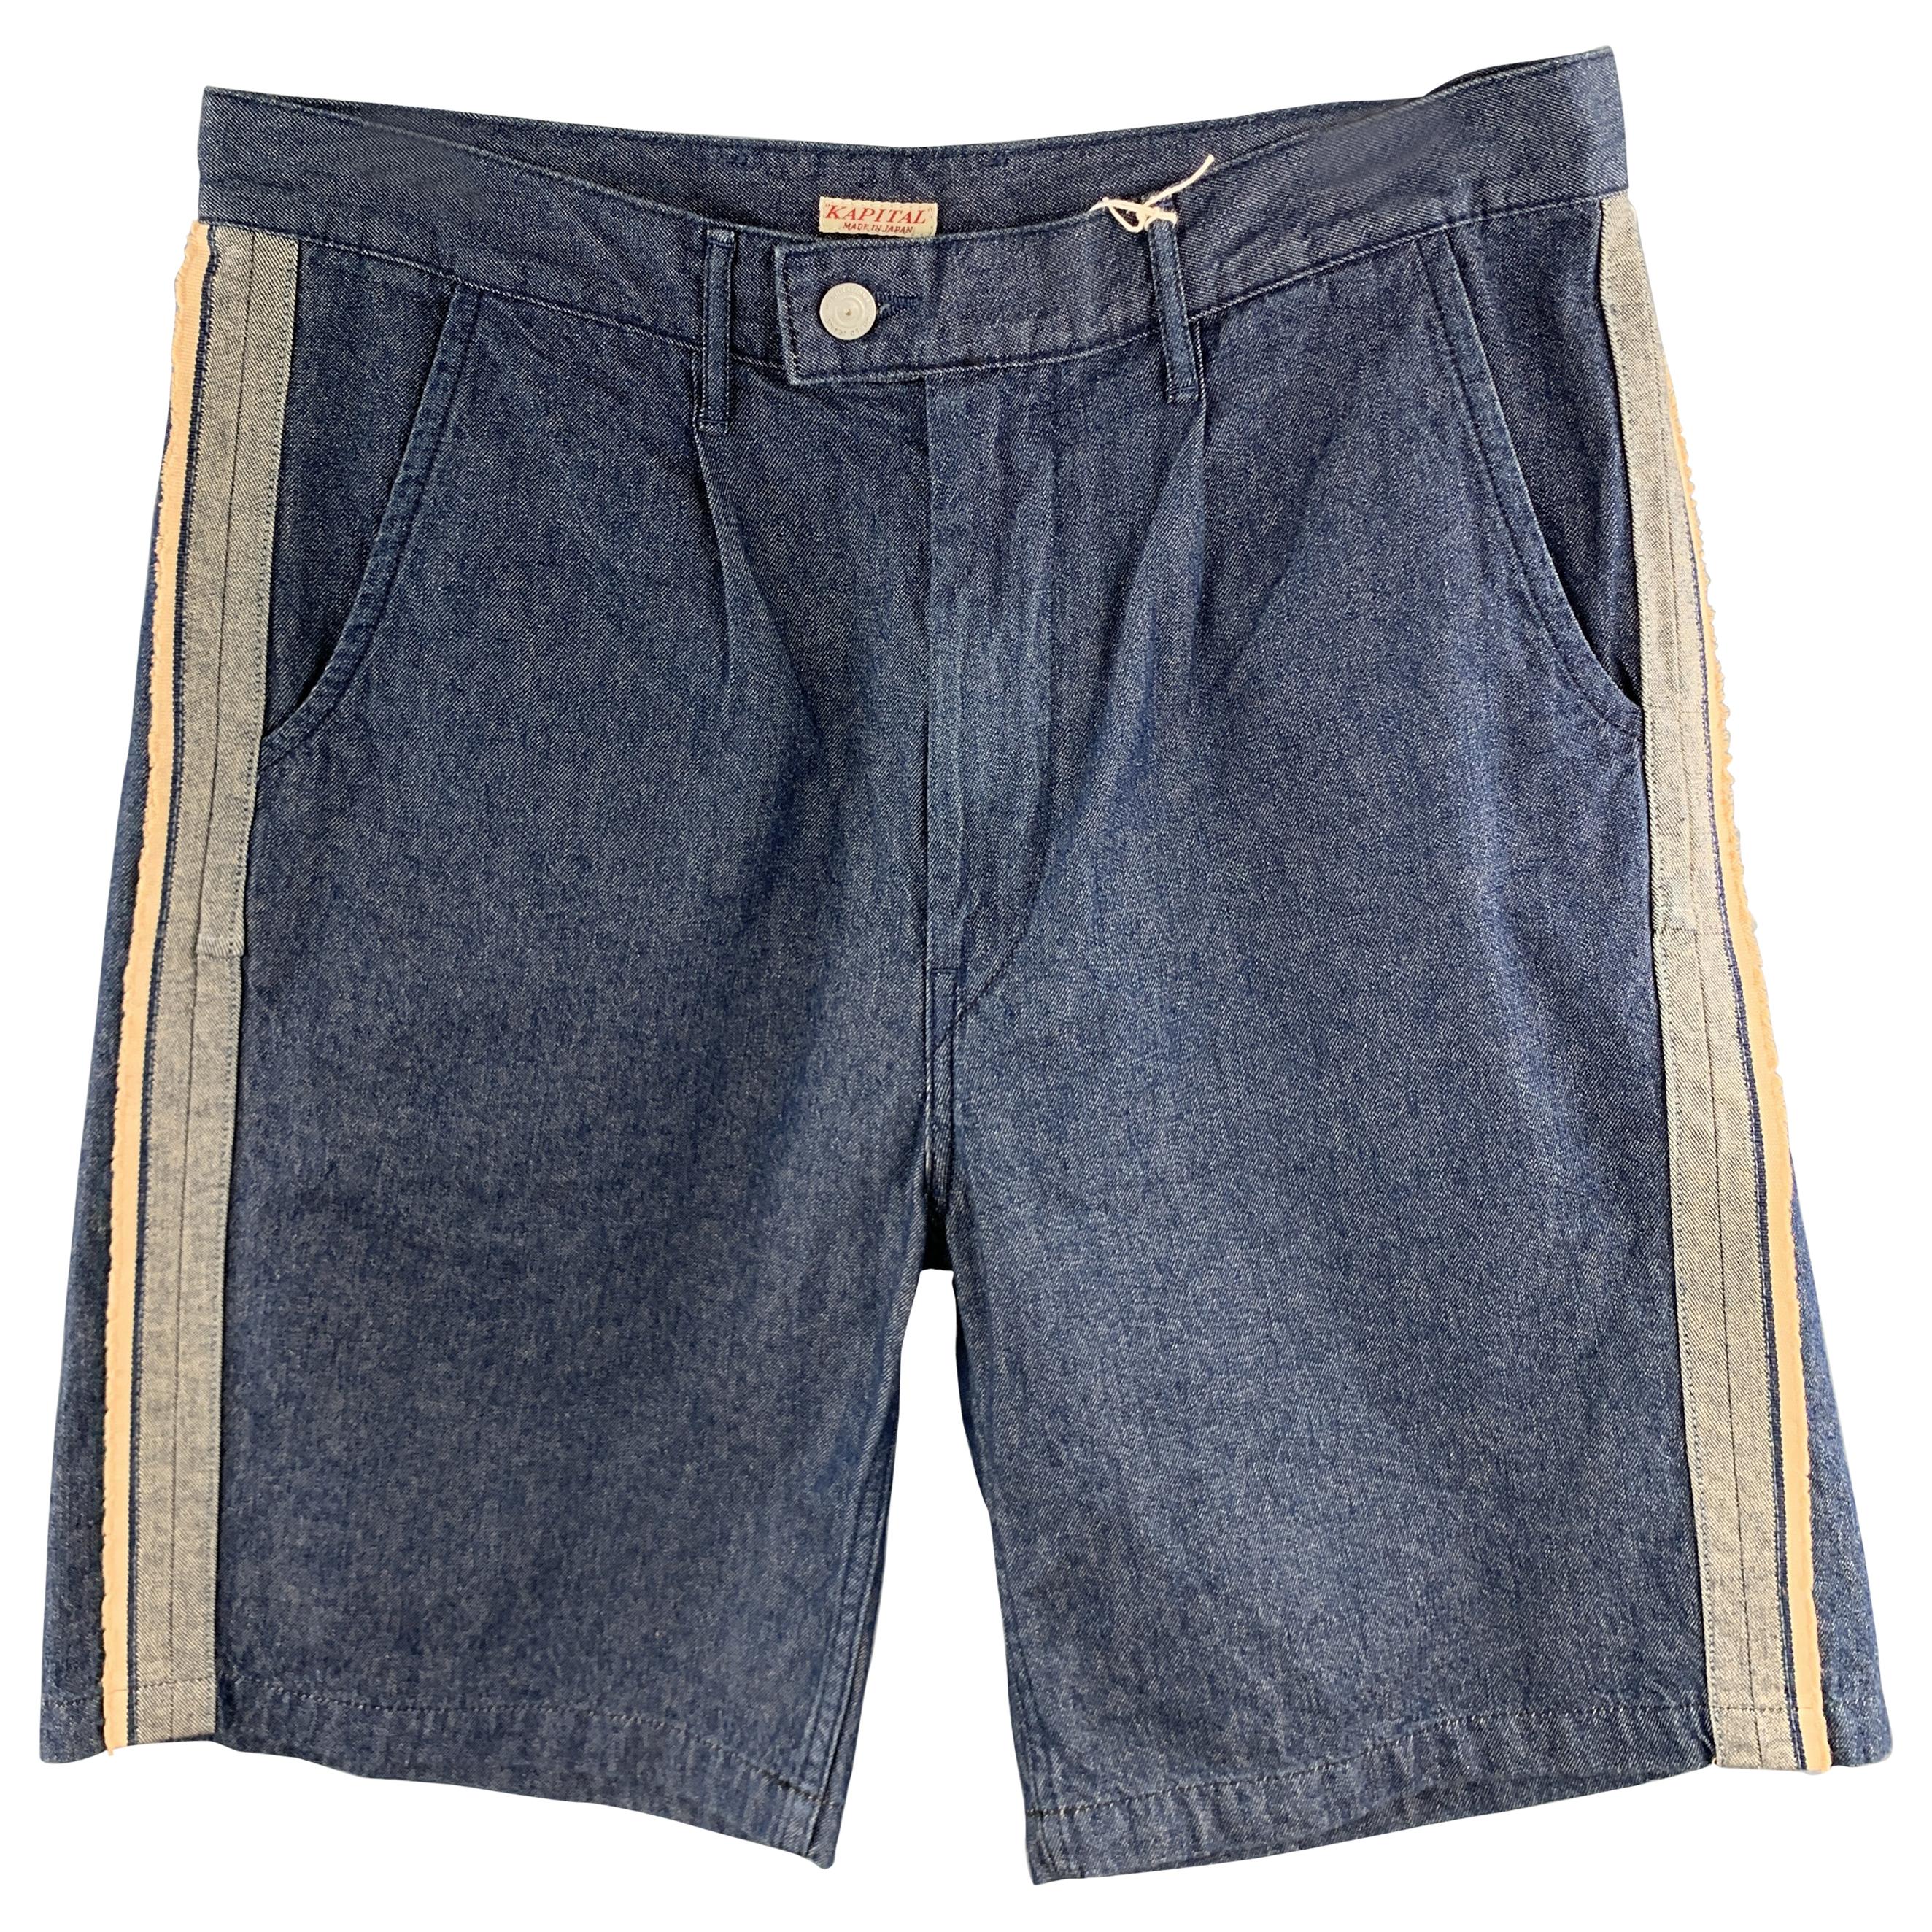 KAPITAL Size 34 Indigo Solid Cotton Pleated Shorts